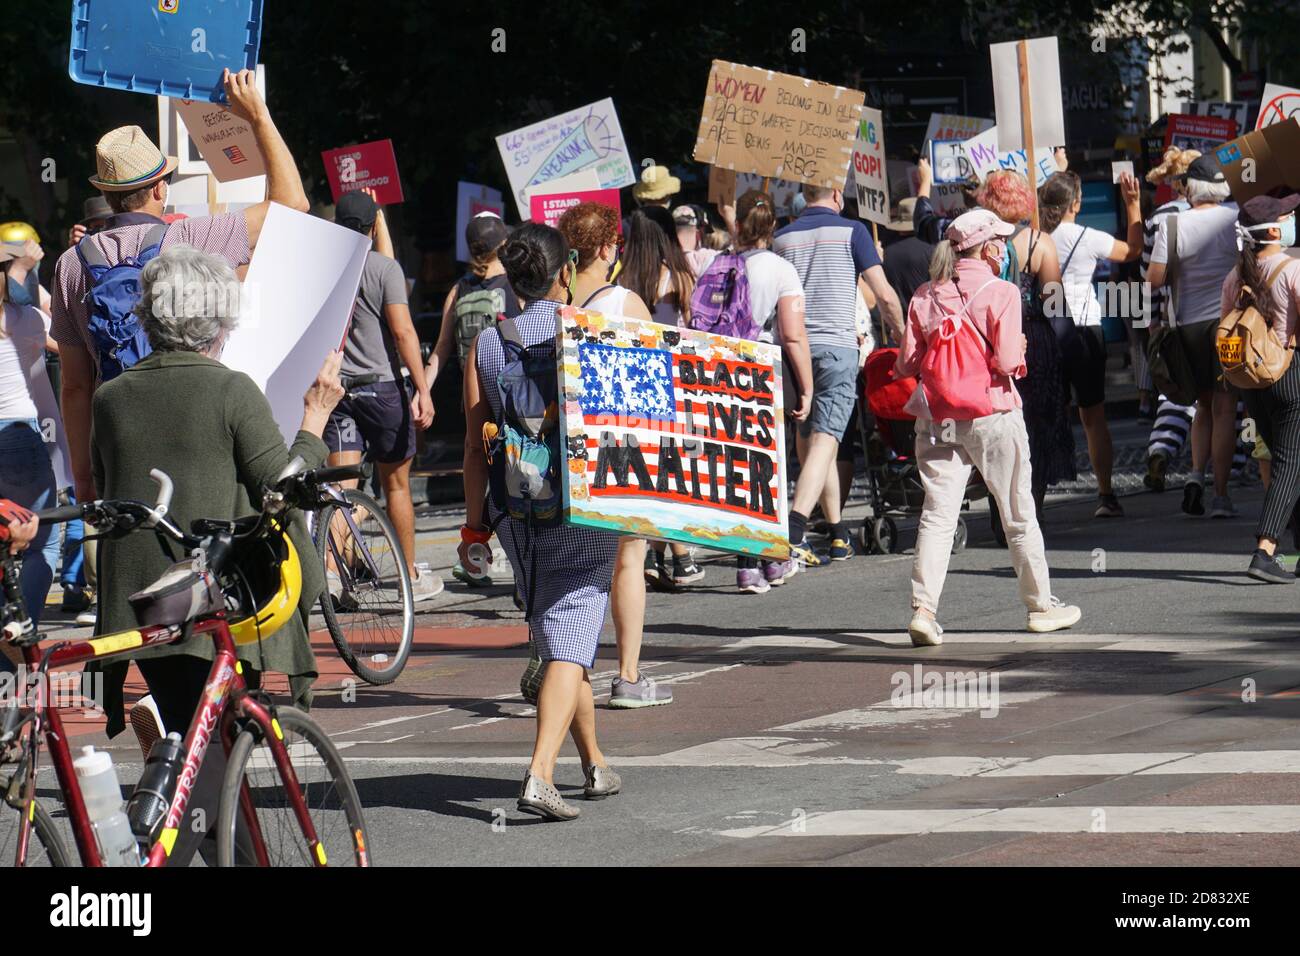 17 ottobre 2020. La marcia delle donne di San Francisco prima delle elezioni presidenziali degli Stati Uniti. Manifestanti che tengono i segnali. Foto Stock